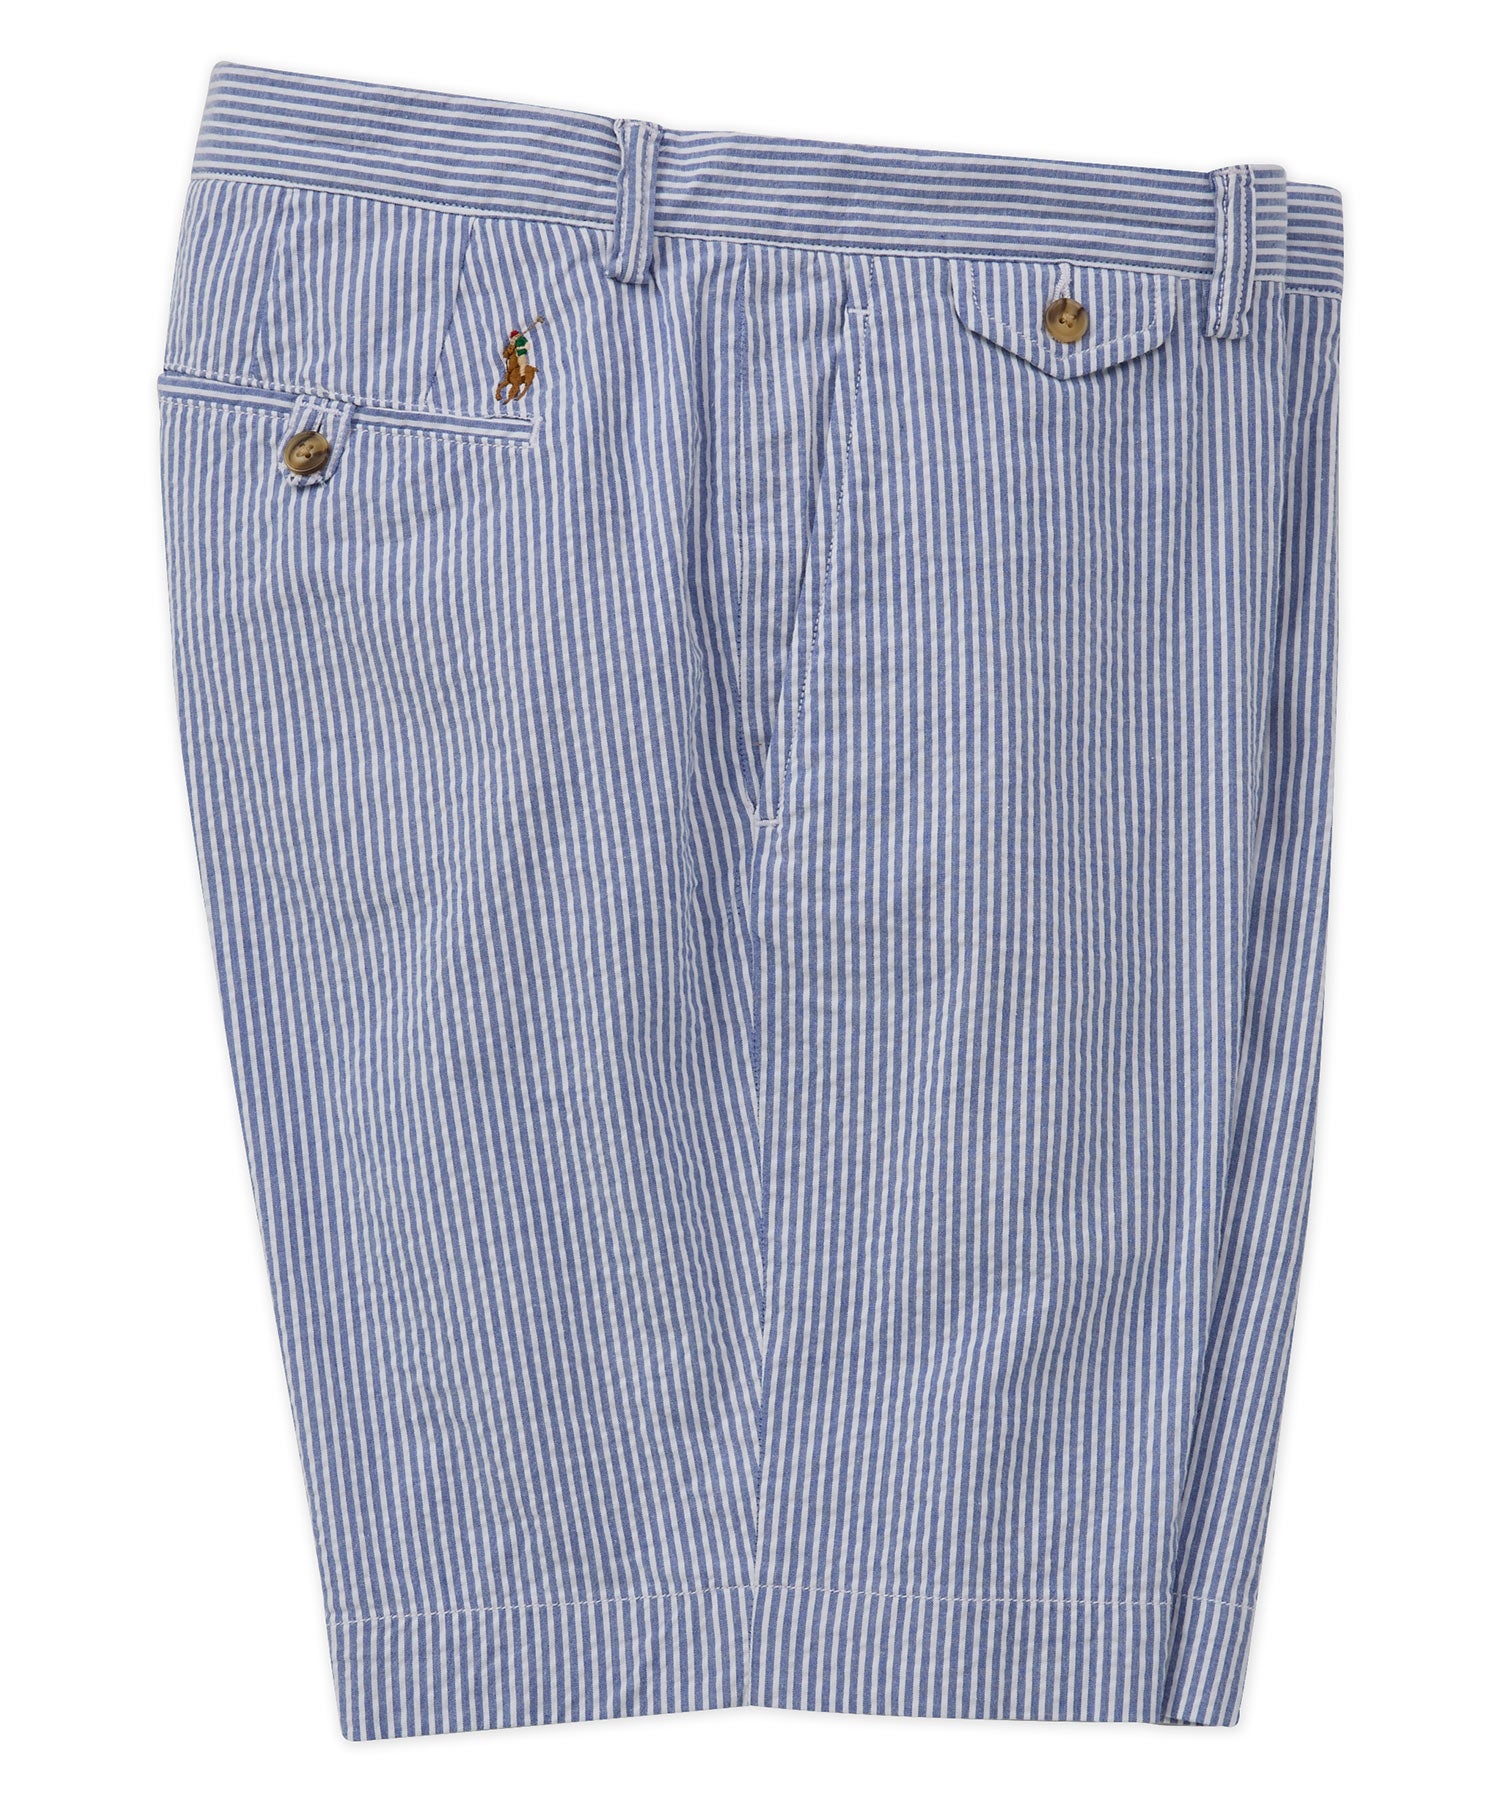 Pantaloncini chino elasticizzati in seersucker Polo Ralph Lauren